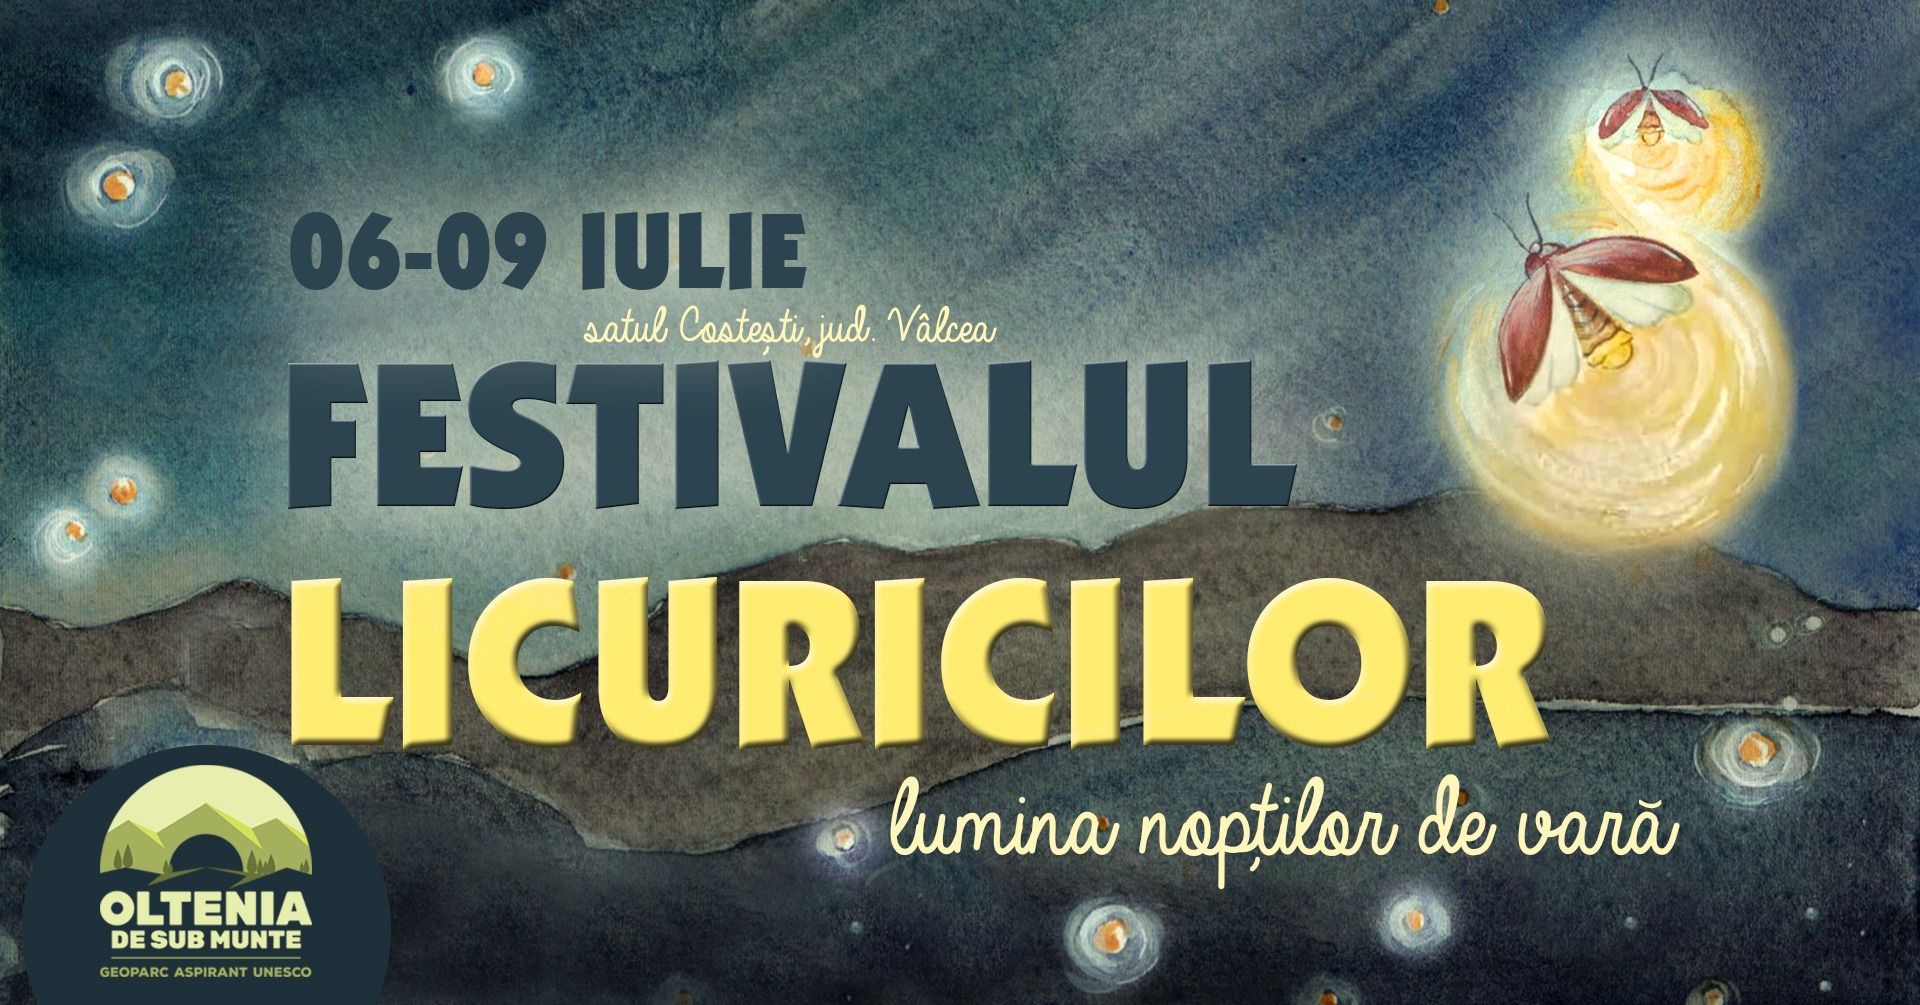 Vâlcea: Festivalul Licuricilor, pentru descoperirea naturii și culturii locale